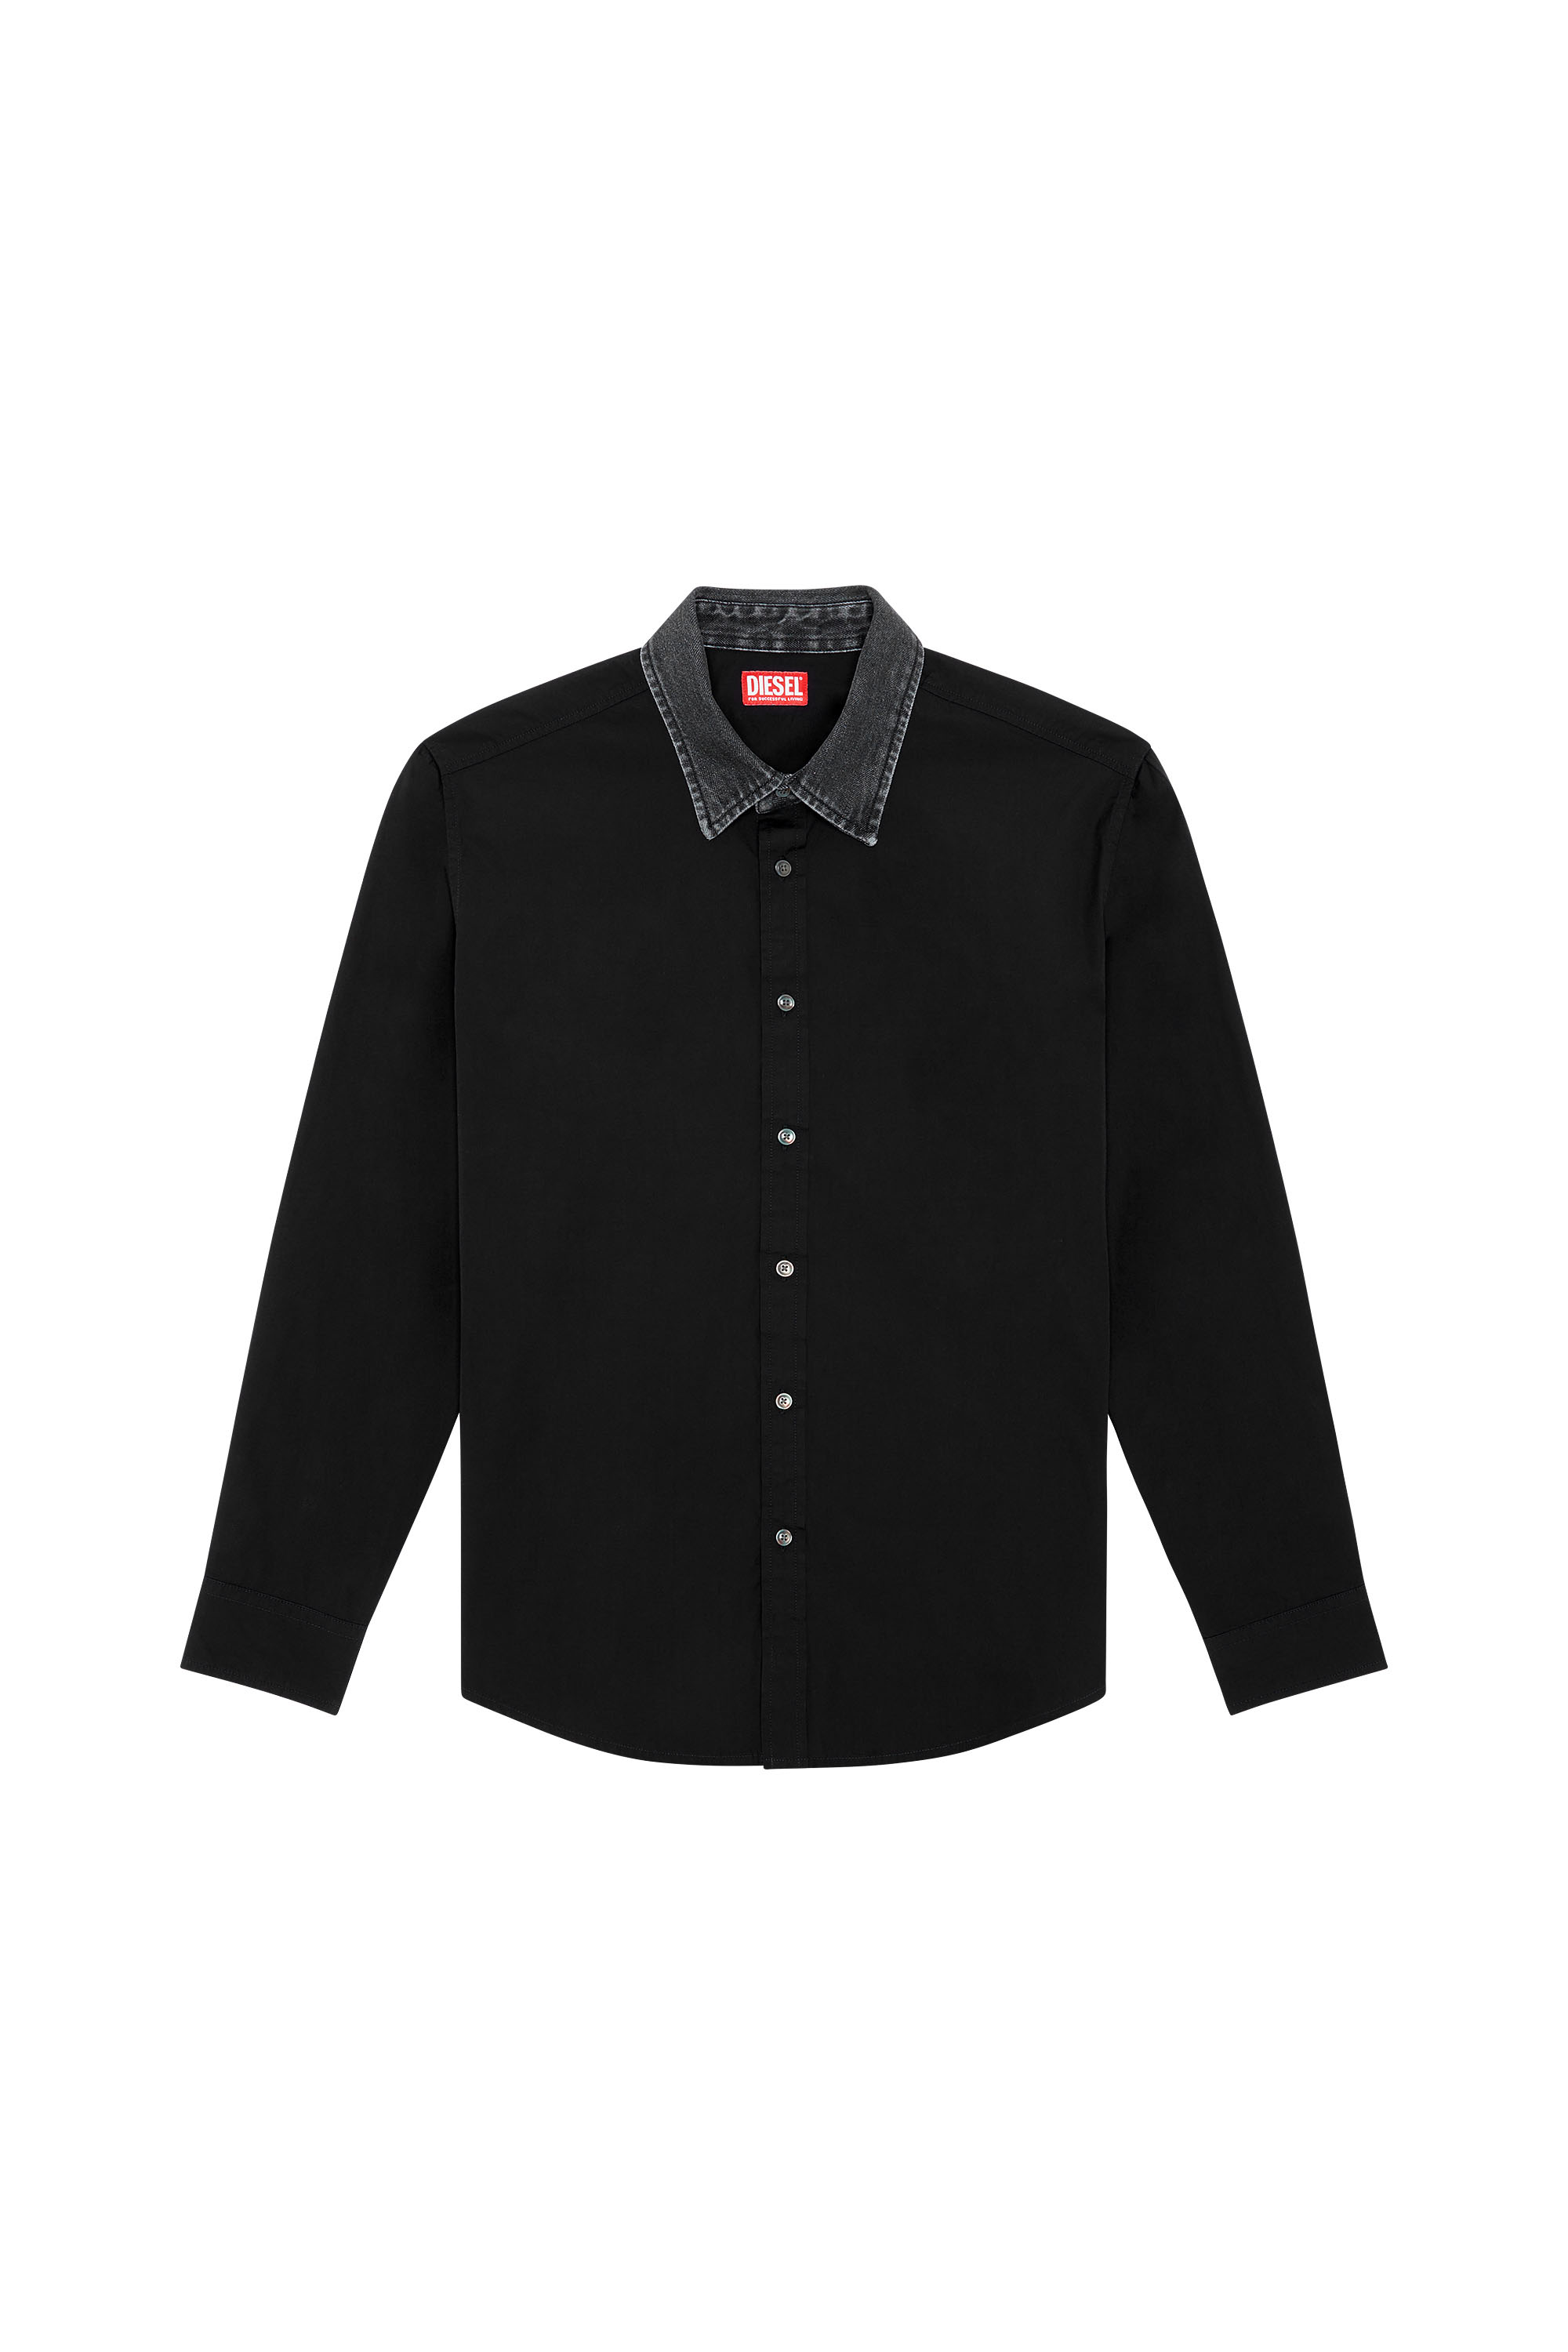 Diesel - S-HOLLS, Man Cotton shirt with denim collar in Black - Image 3